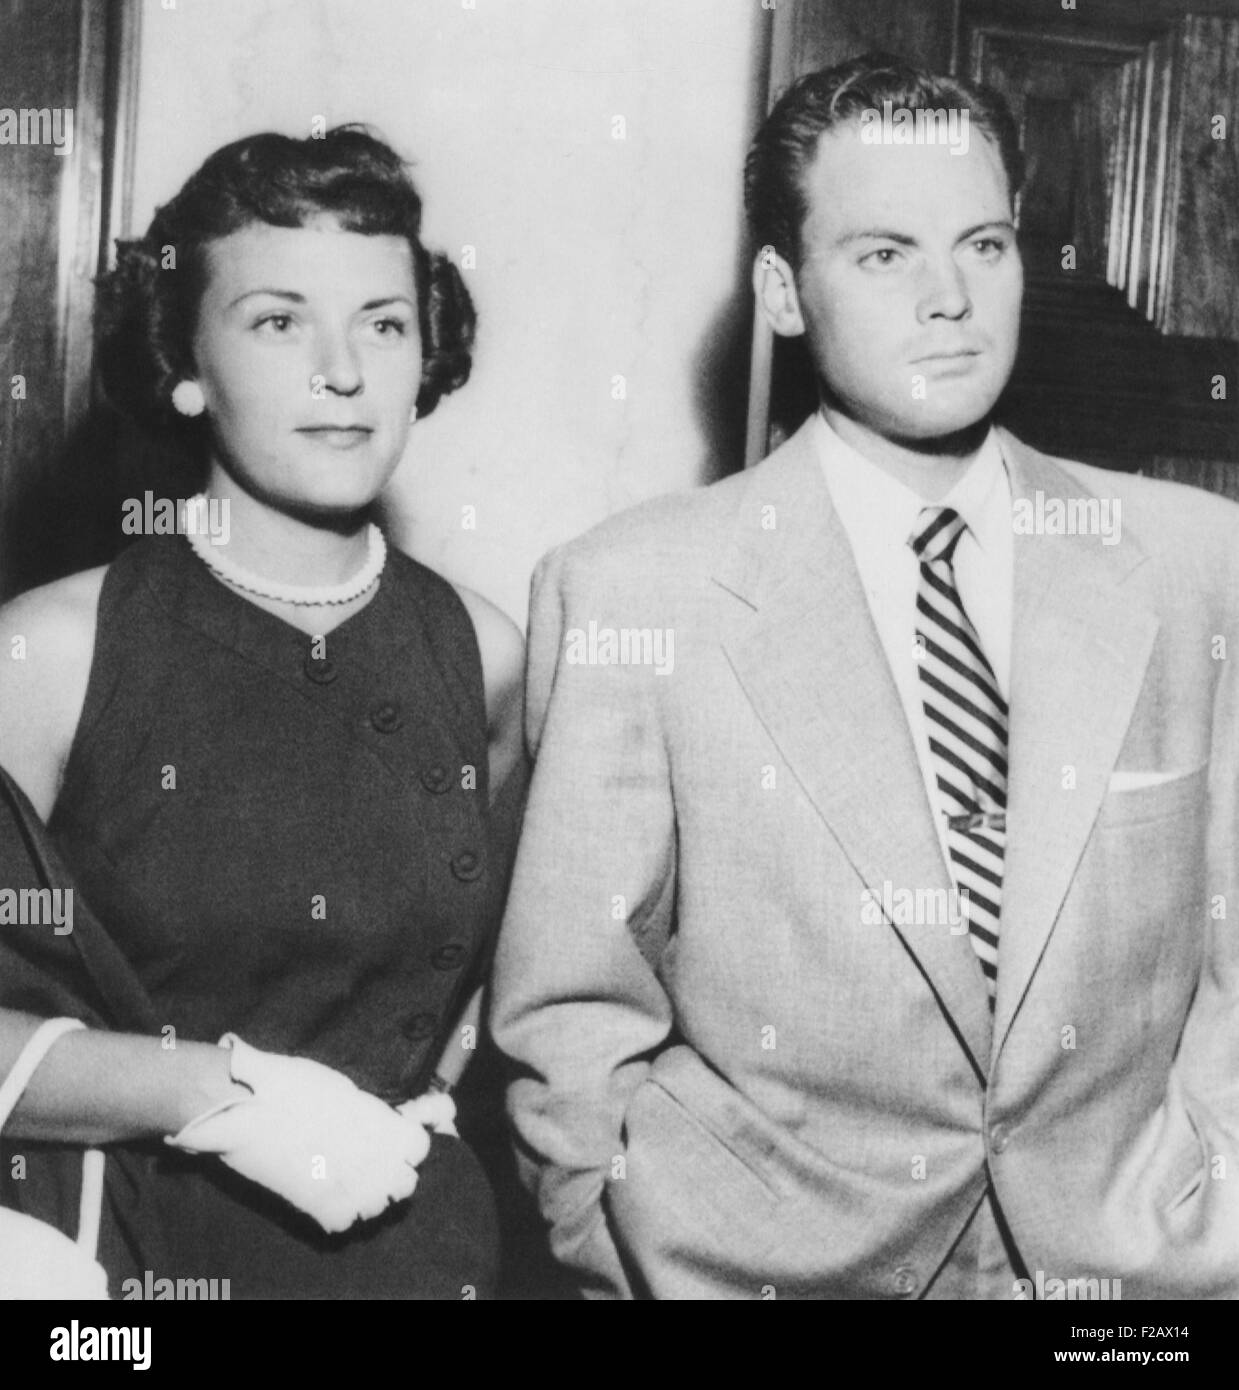 L'acteur John Agar en cour le 20 juillet 1950 pour faire face à des accusations de conduite avec facultés affaiblies. Il est accompagné de sa femme Loretta Barnet Combs Agar. CSU (2015   1178 11) Banque D'Images